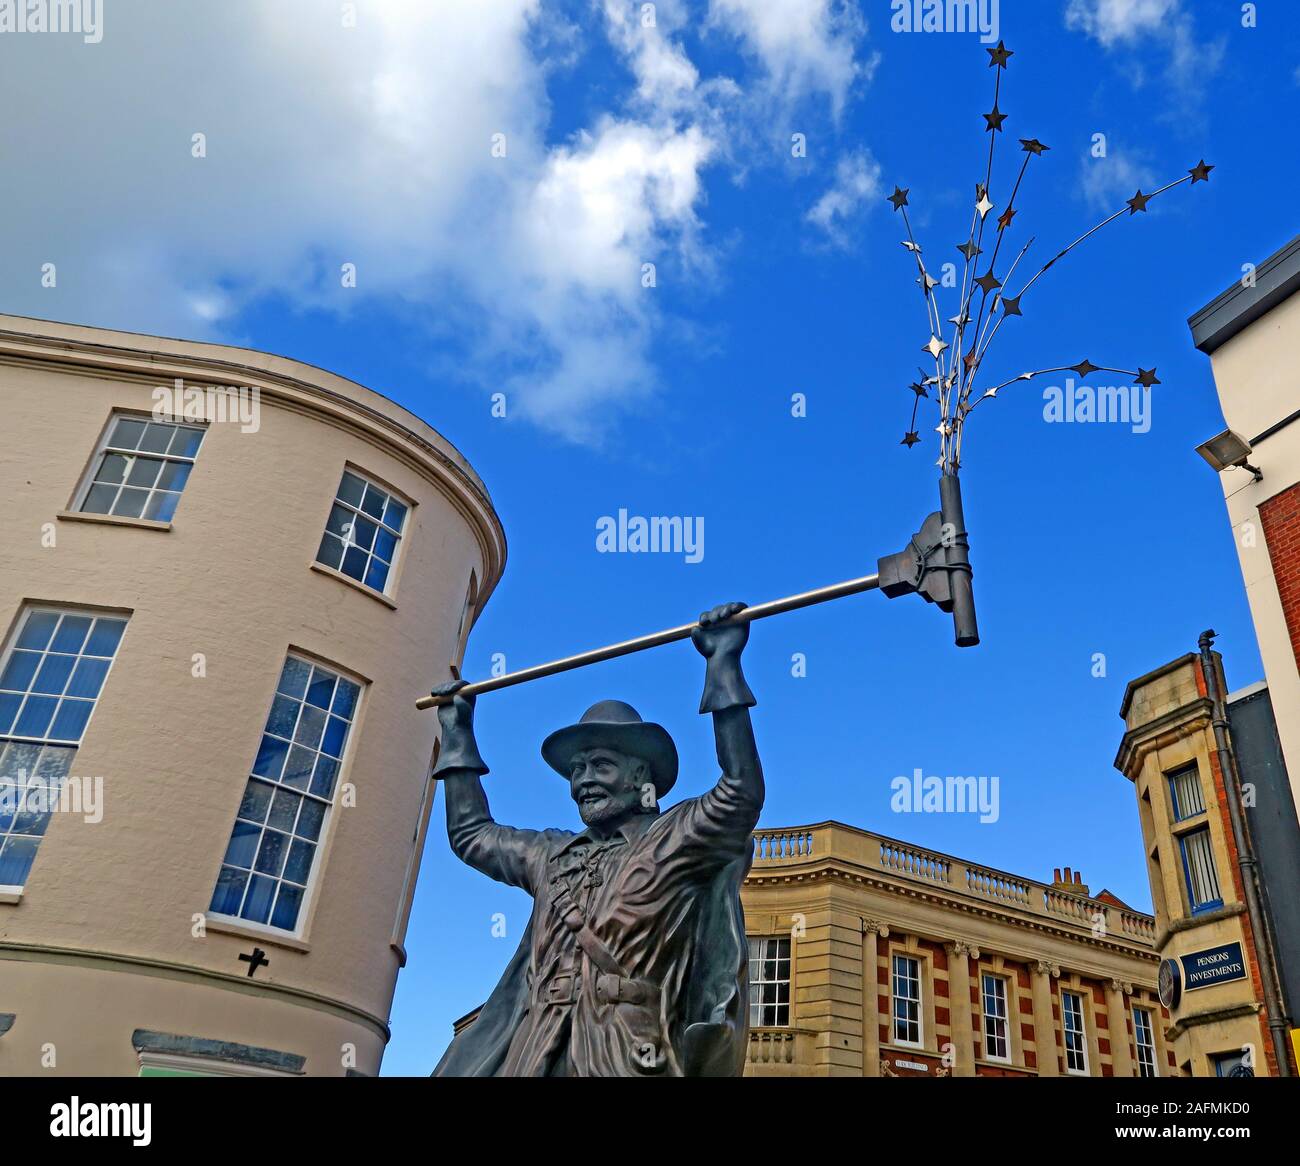 Statue de l'Esprit de Carnaval, centre ville de Bridgwater, conseil du district de Sedgemoor, Somerset, Angleterre du Sud-Ouest, Royaume-Uni Banque D'Images